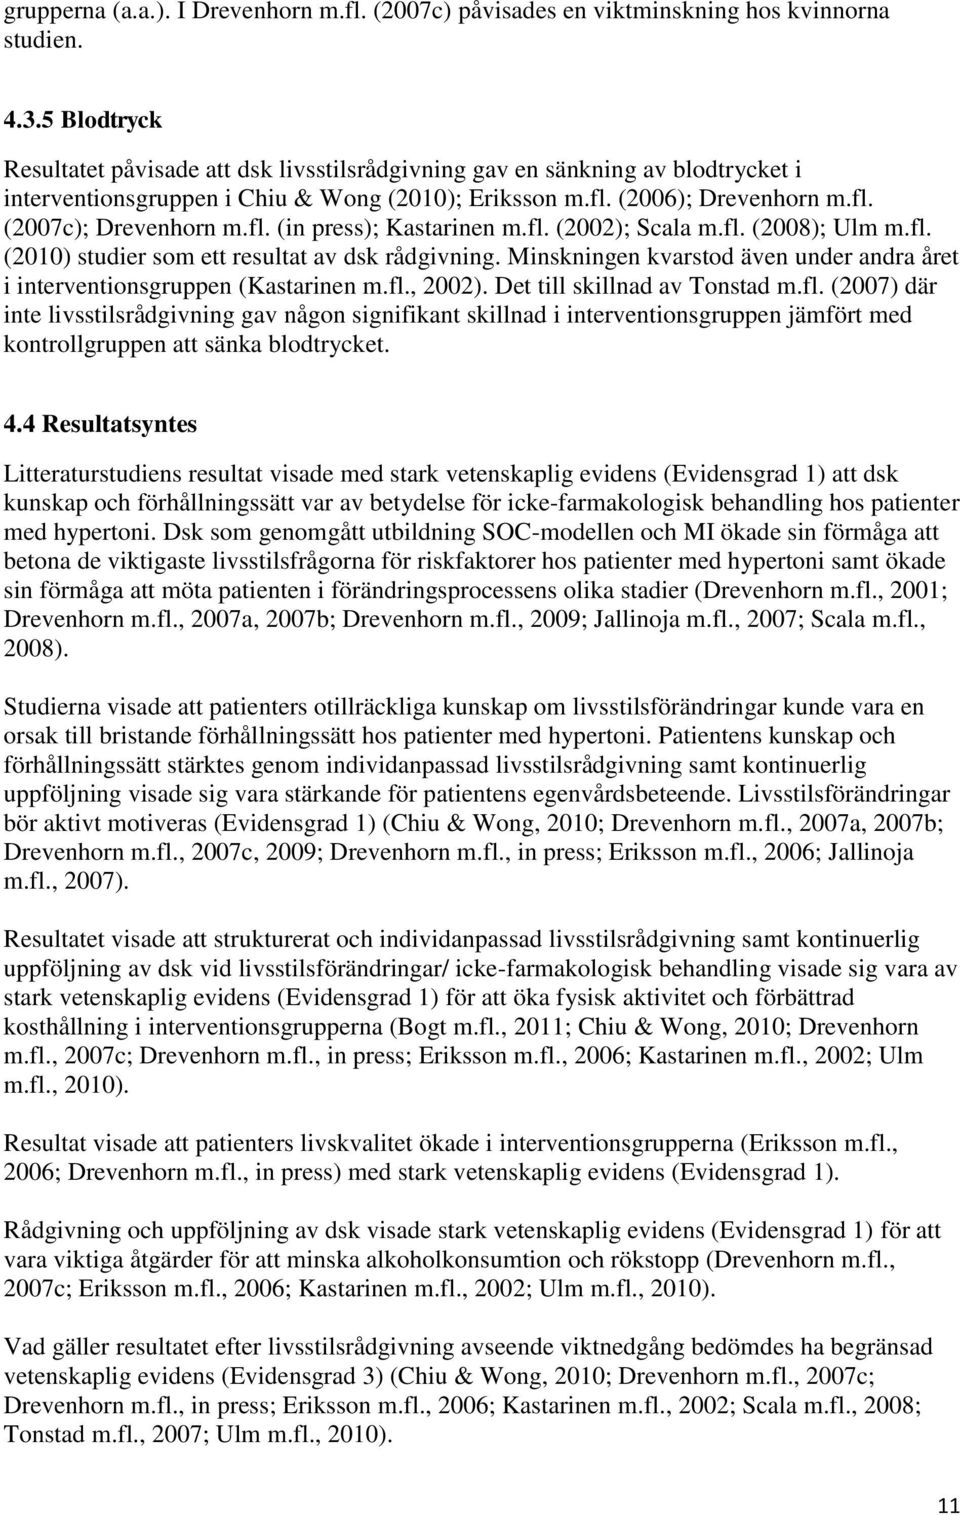 fl. (in press); Kastarinen m.fl. (2002); Scala m.fl. (2008); Ulm m.fl. (2010) studier som ett resultat av dsk rådgivning.